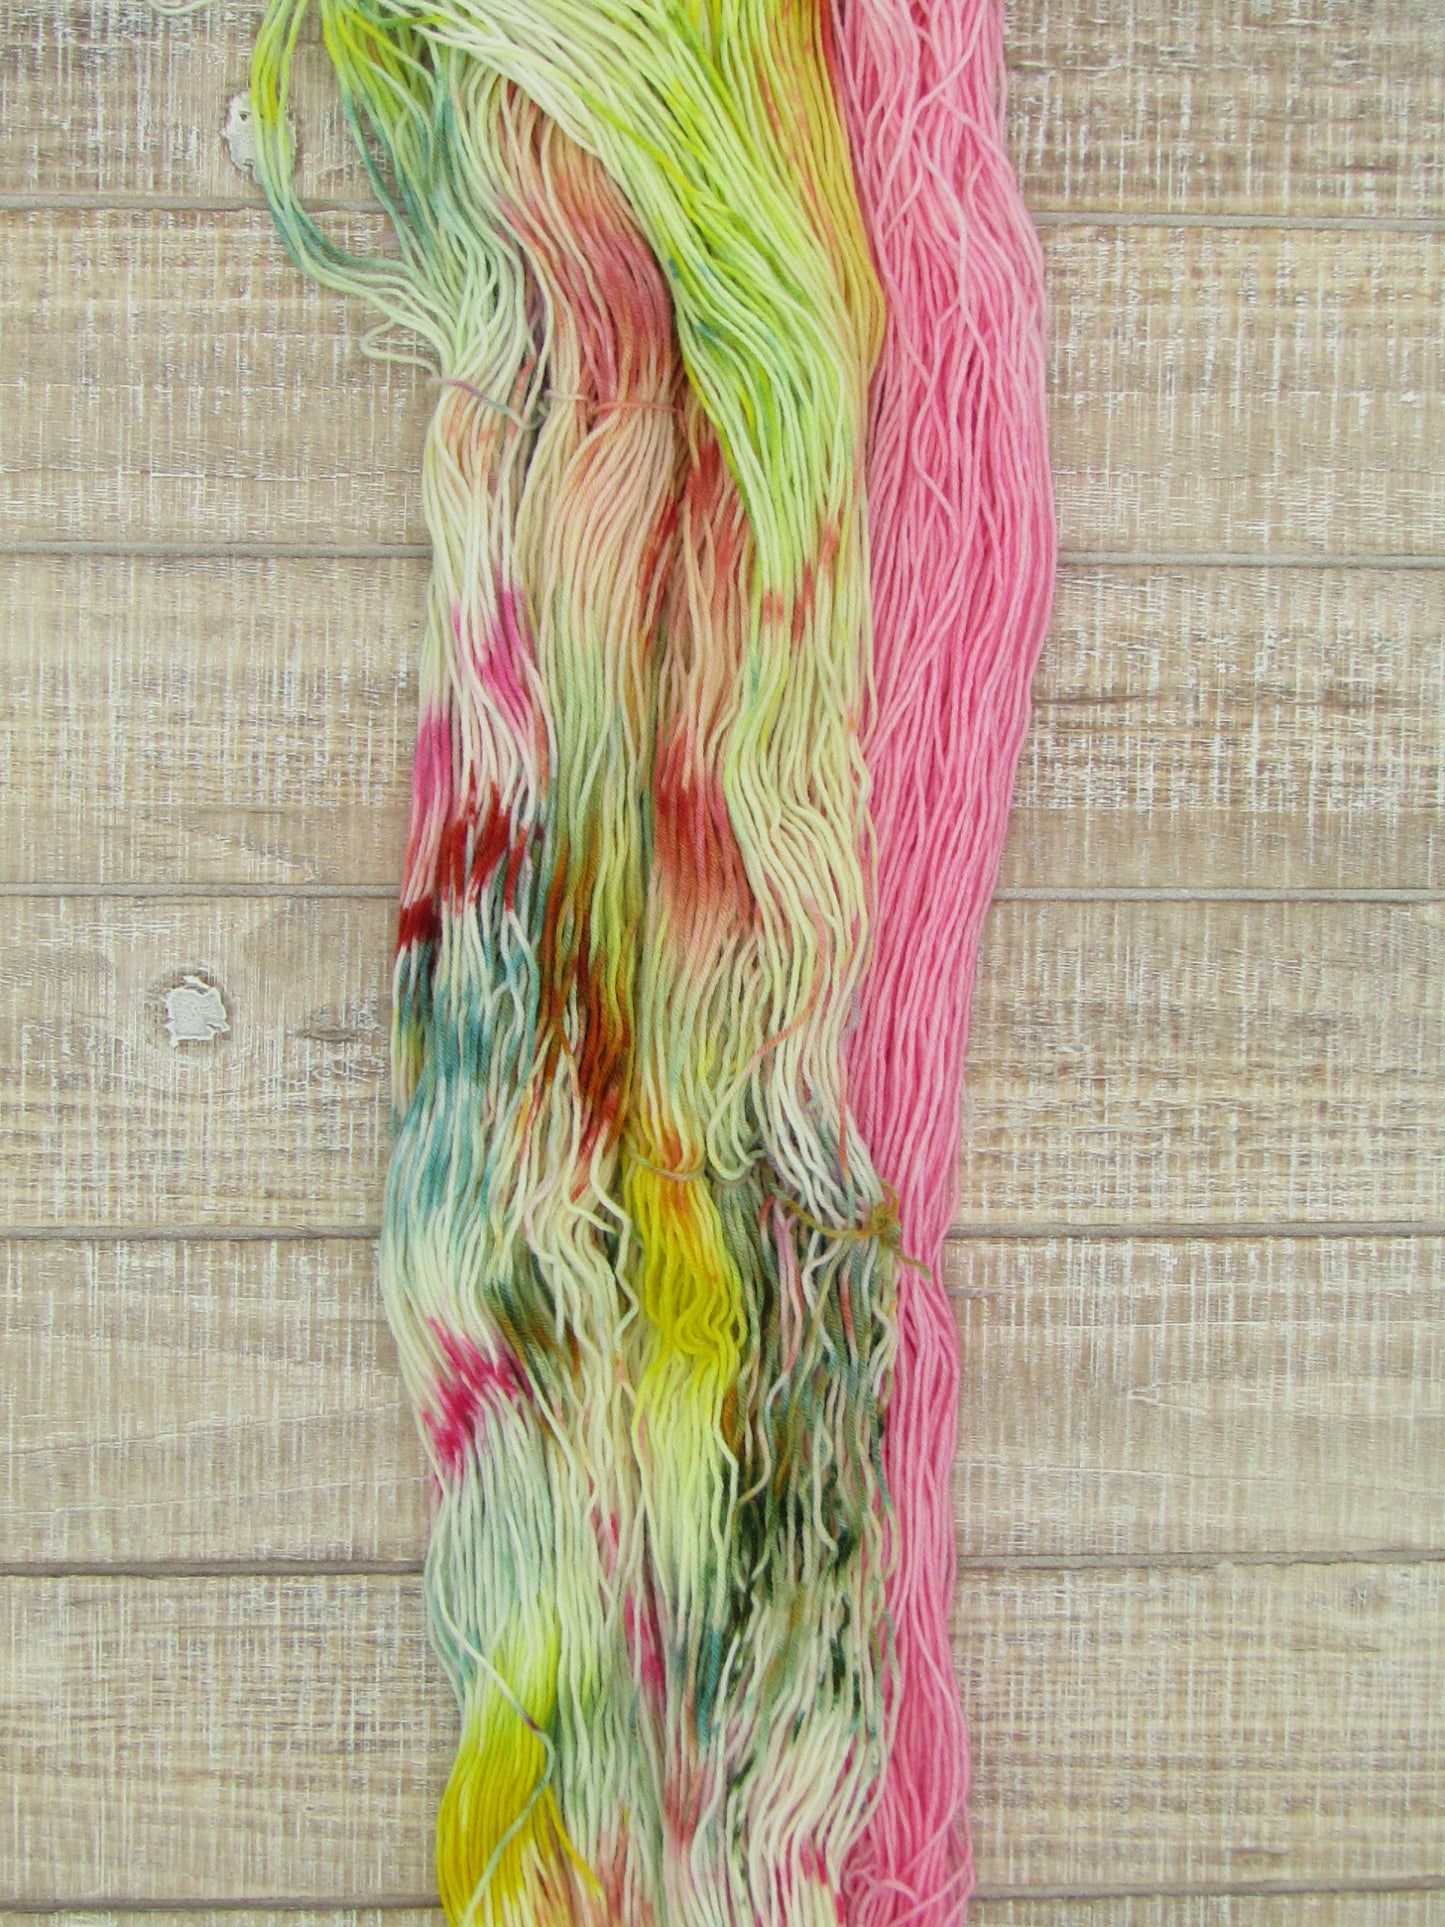 Hand-Dyed Yarn Set Merino/Nylon Sock Weight Abner